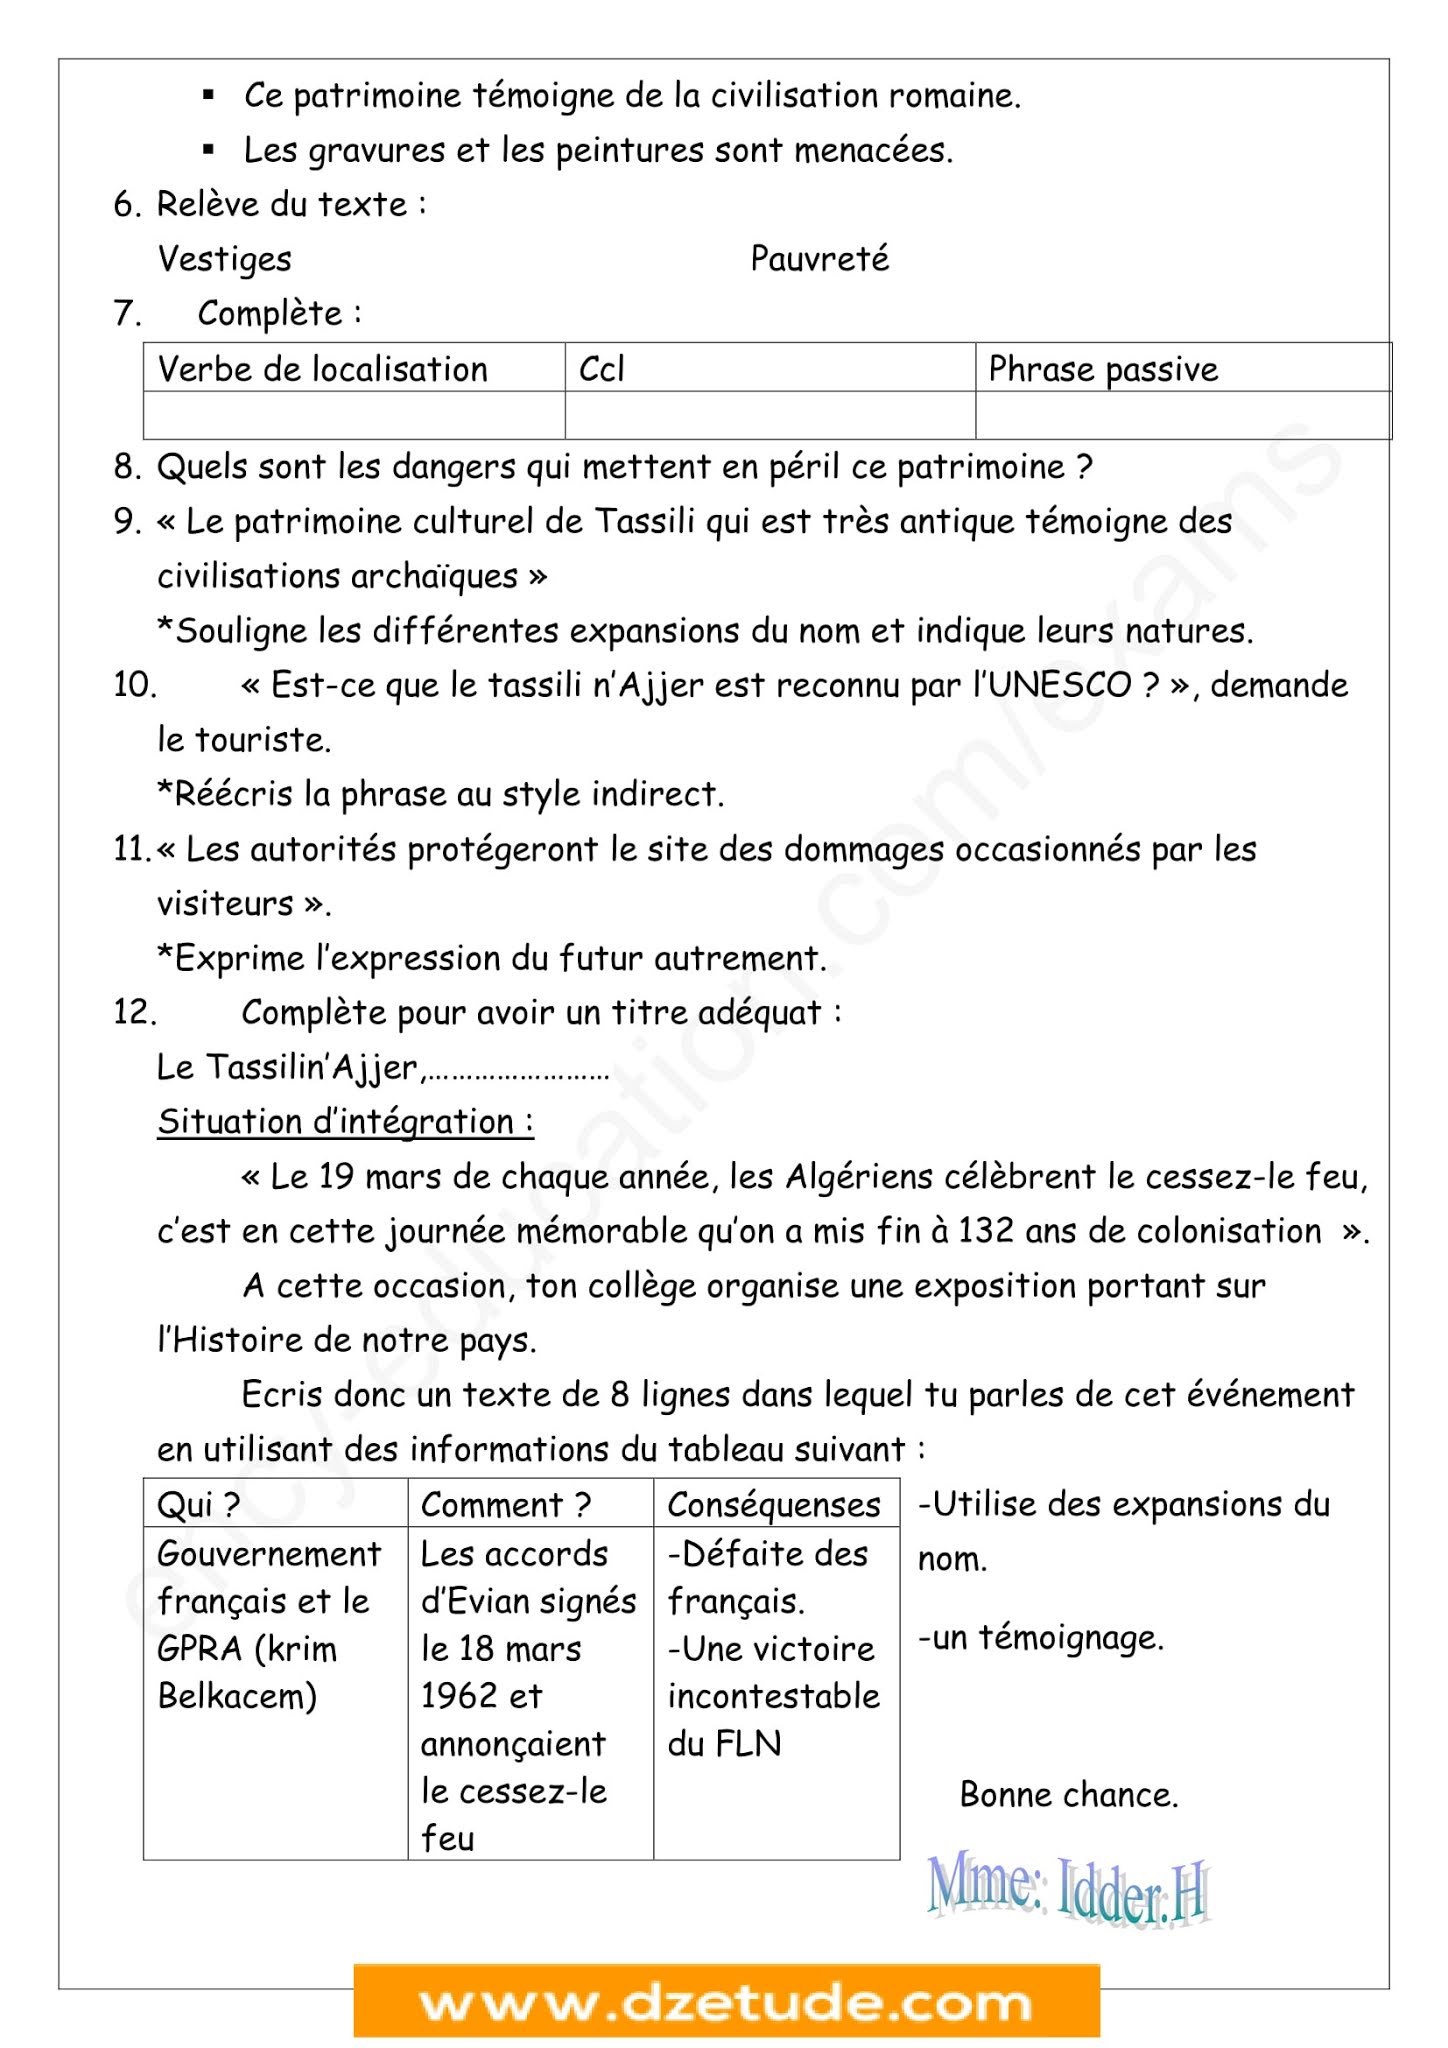 إختبار اللغة الفرنسية الفصل الثاني للسنة الثالثة متوسط - الجيل الثاني نموذج 10